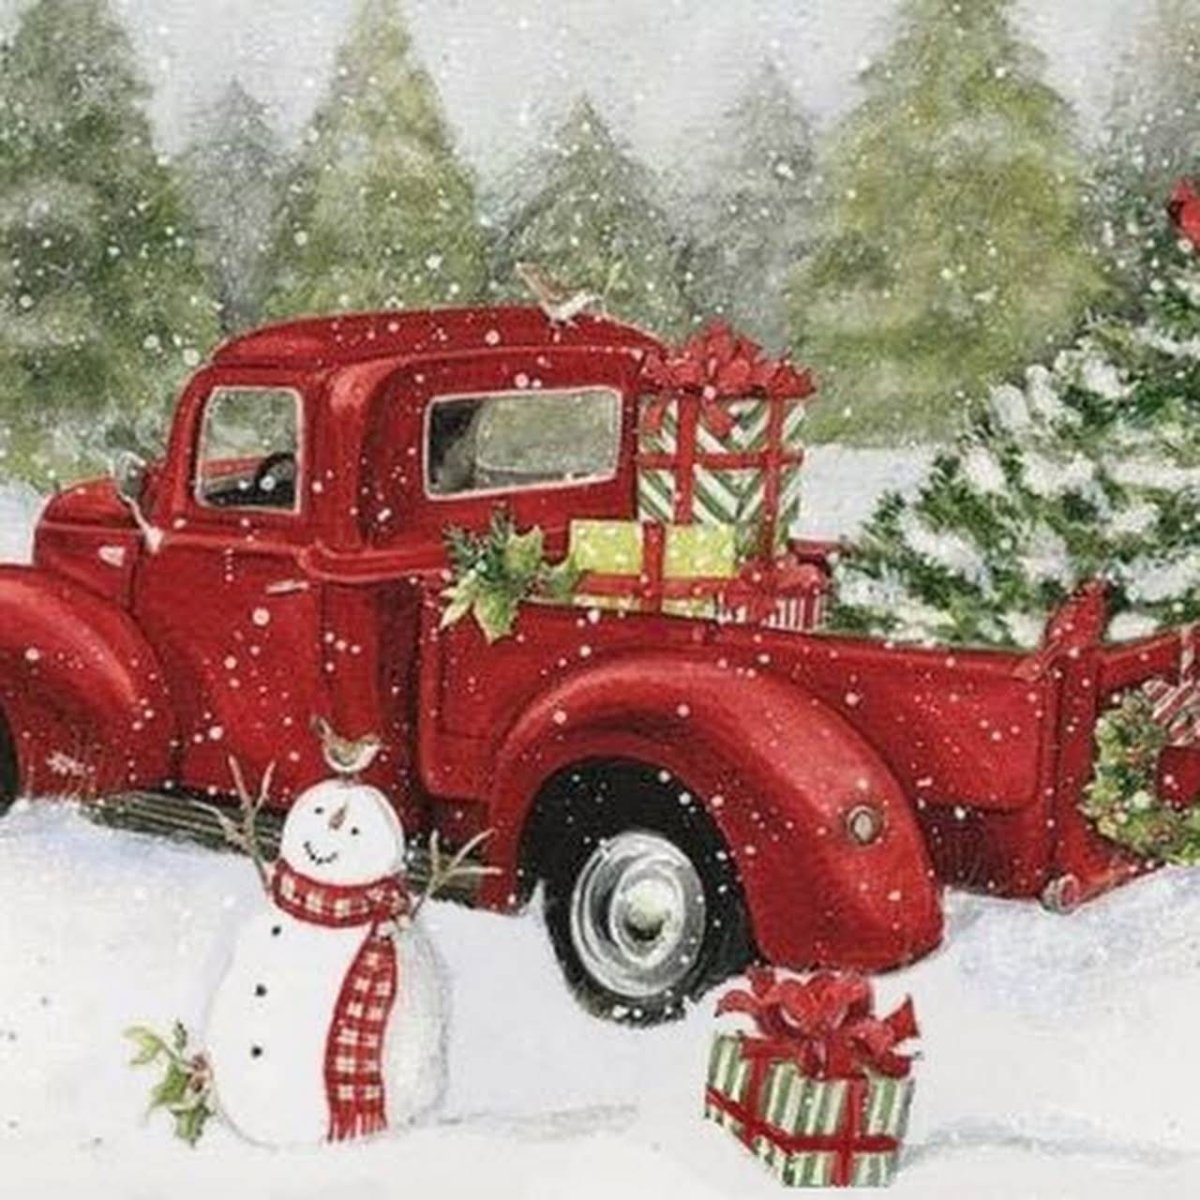 Картина с красной новогодней машиной